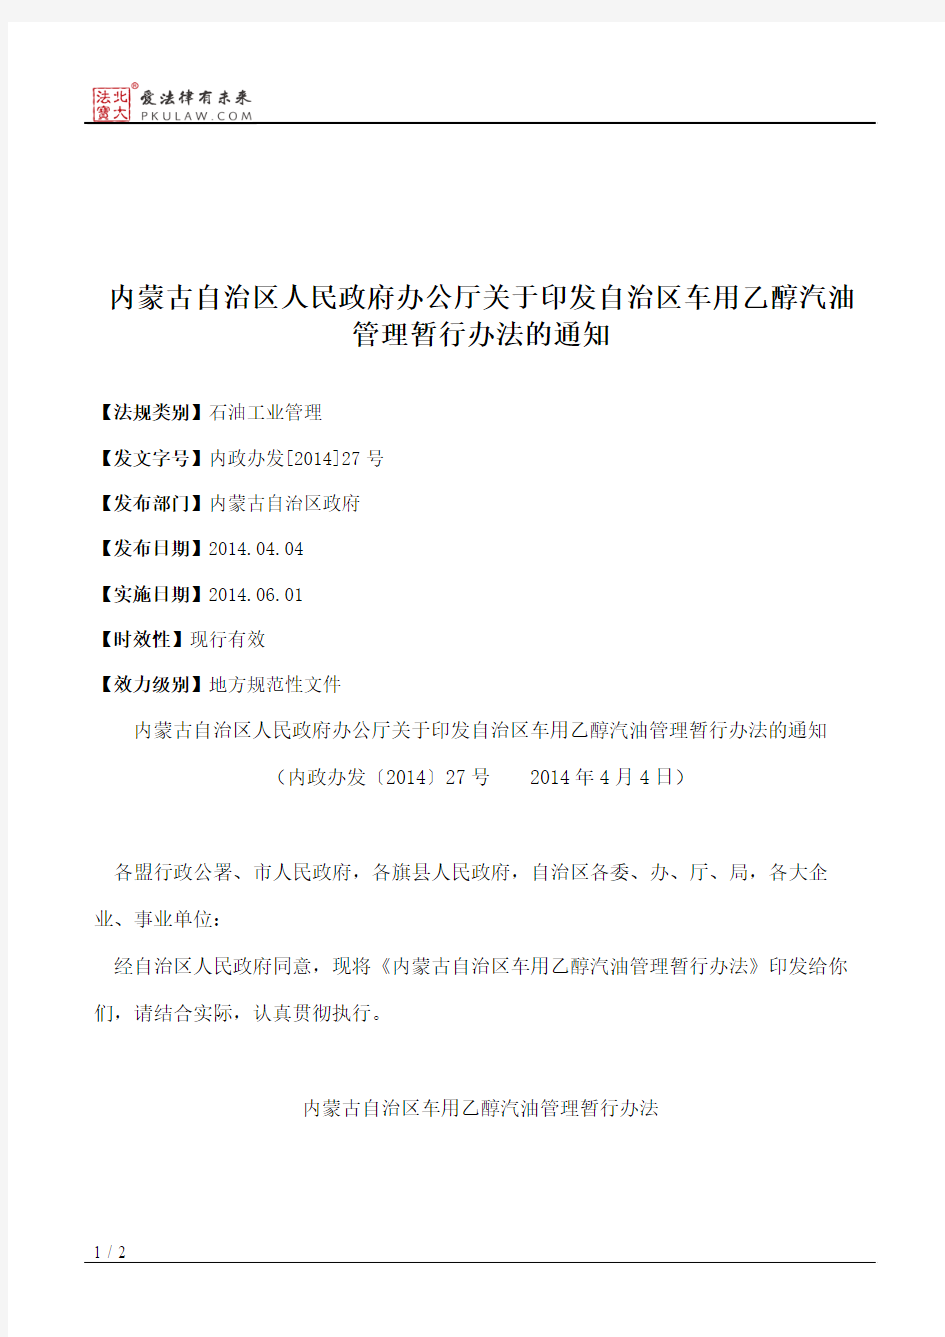 内蒙古自治区人民政府办公厅关于印发自治区车用乙醇汽油管理暂行